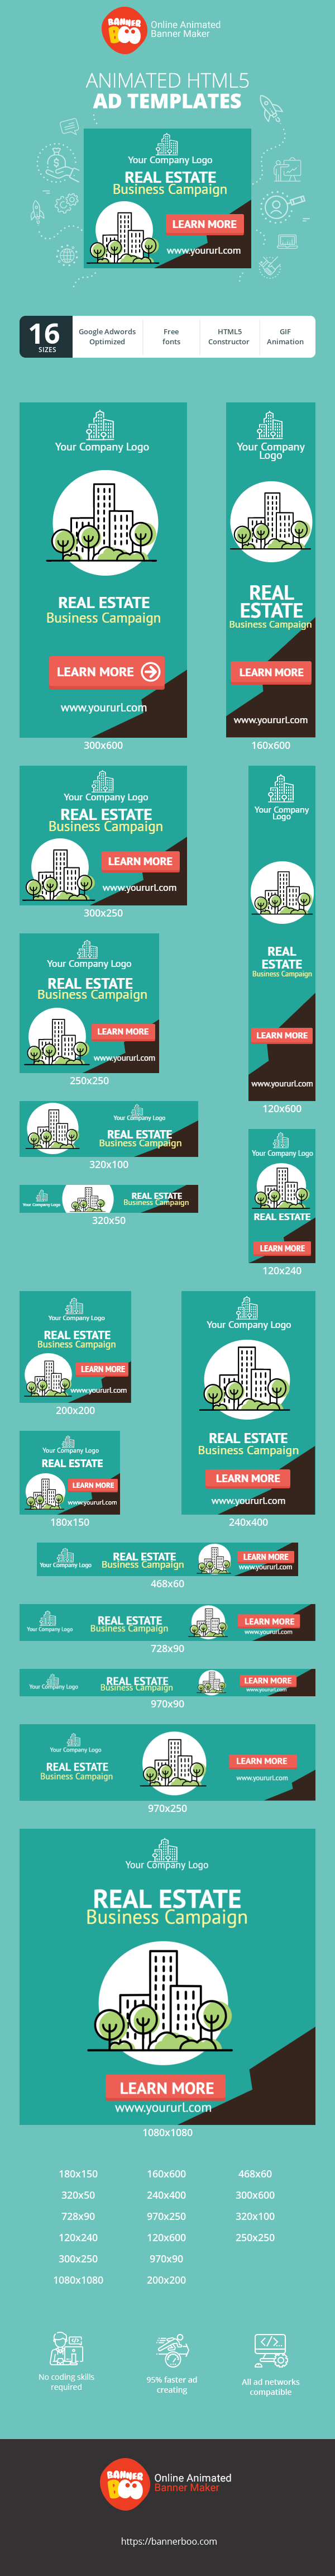 Шаблон рекламного банера — Real Estate Business Campaign